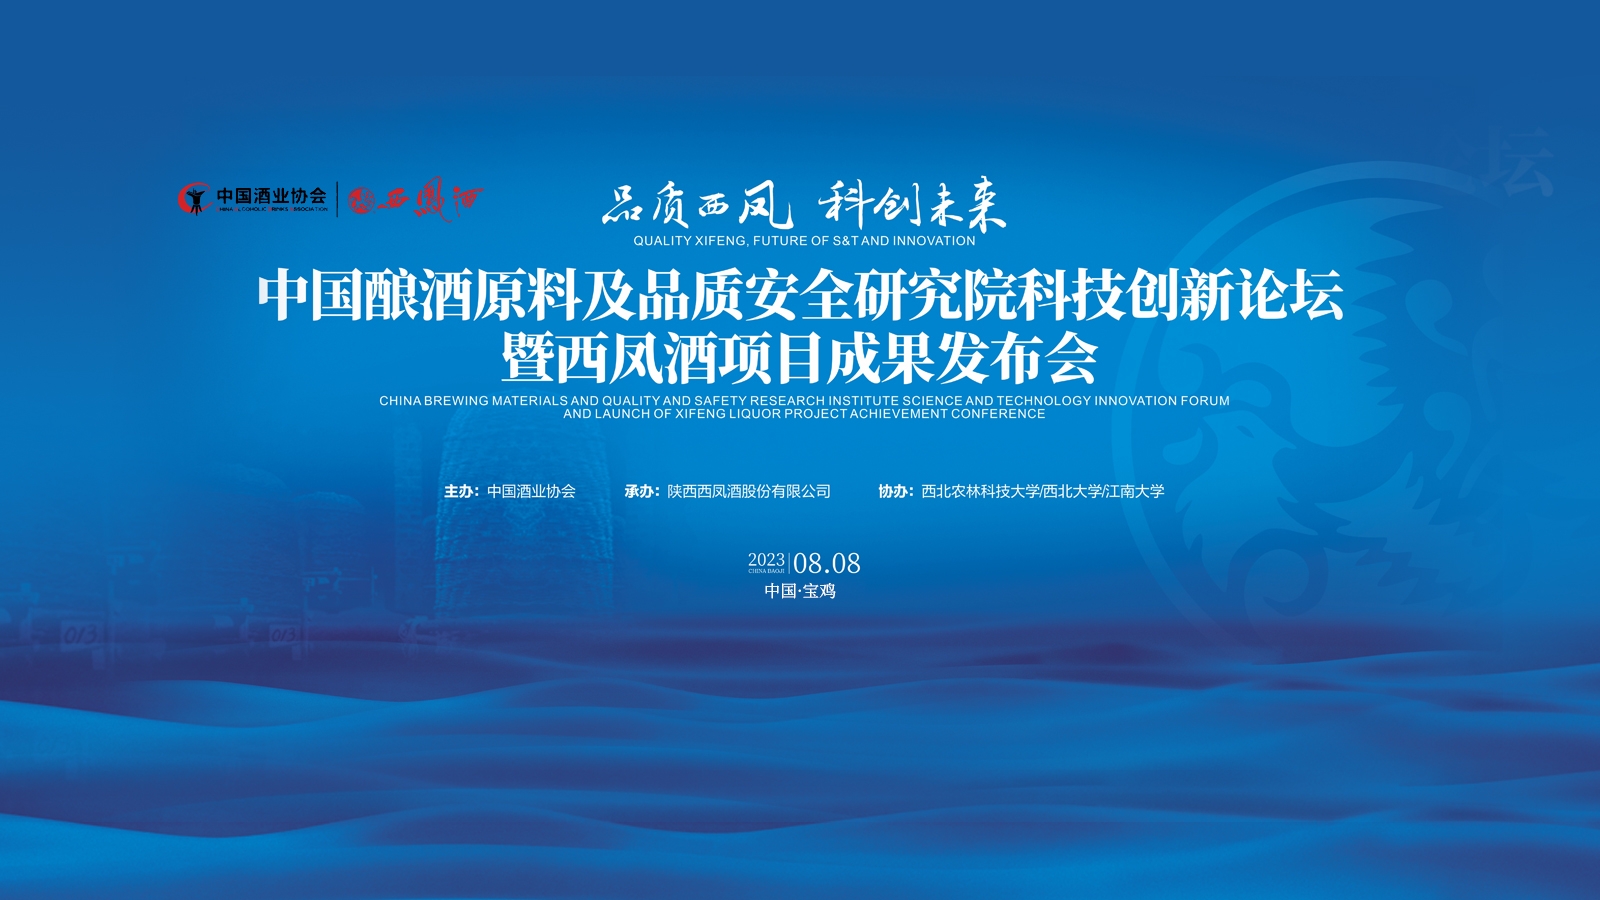 品質西鳳  科創未來—中國釀酒原料及品質安全研究院科技創新論壇暨西鳳酒項目成果發布會